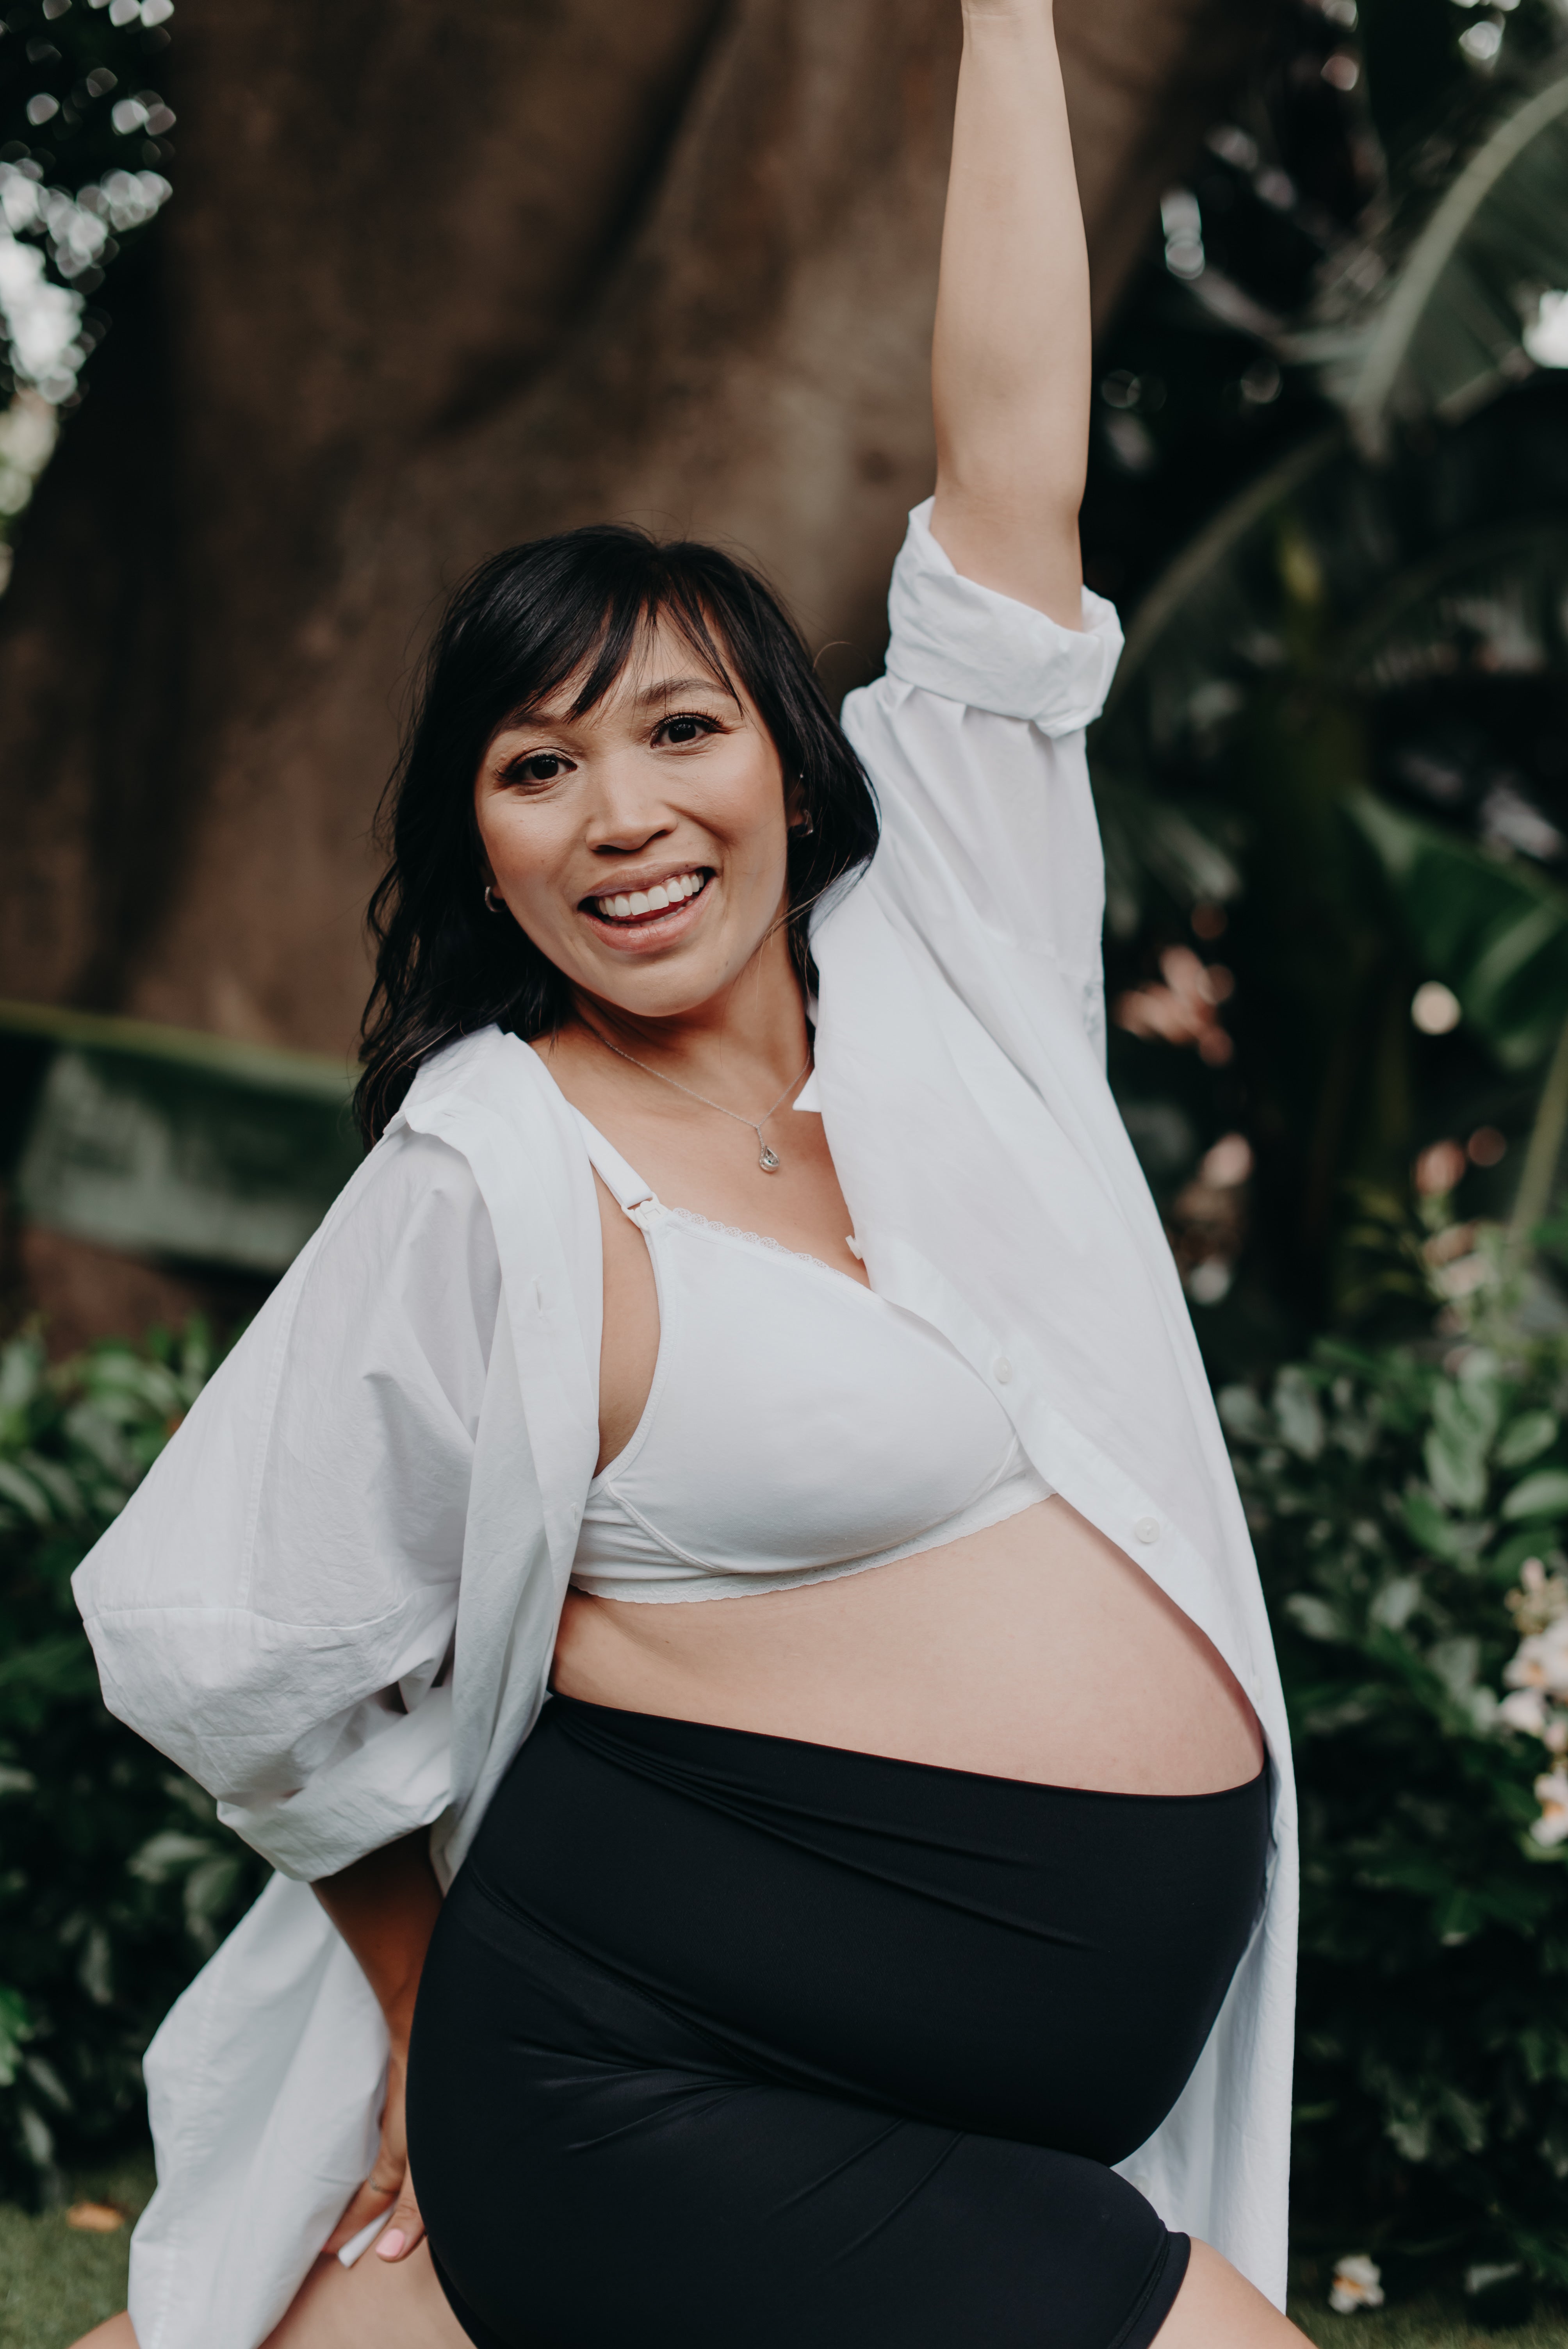 Buy Pregnant Women's Vest Top Breastfeeding Bra Postpartum in